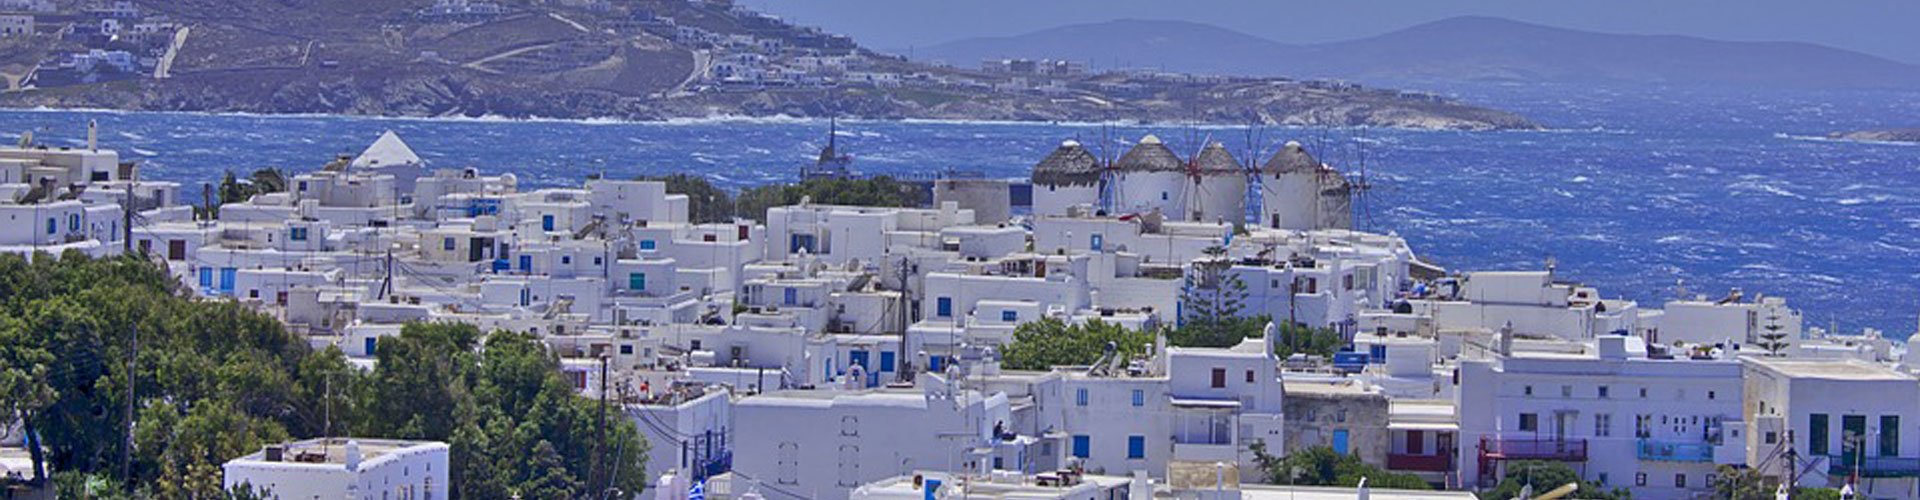 Ostrvo Mikonos u Grčkoj panorama